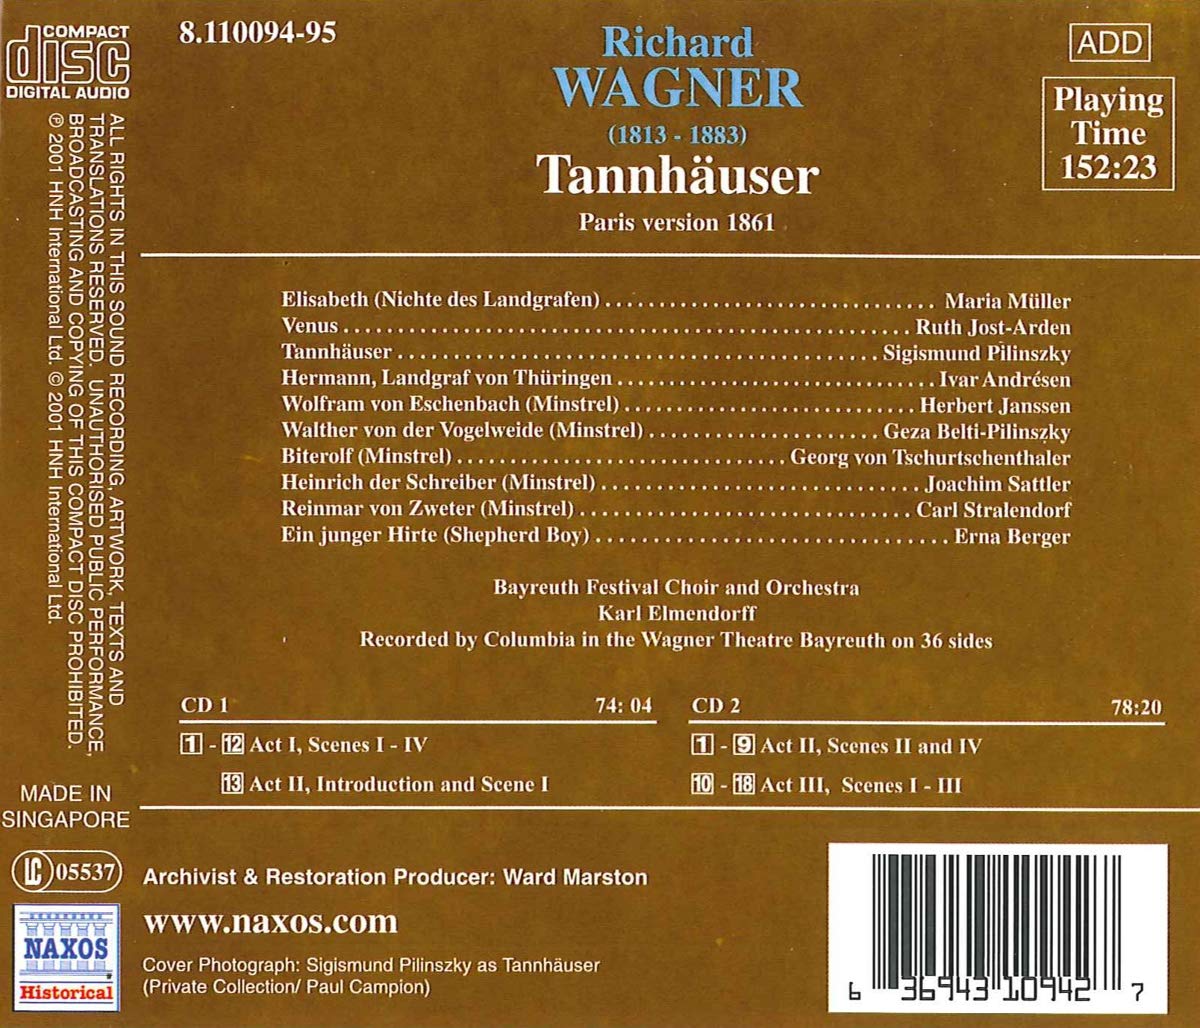 WAGNER: Tannhauser 1930 - slide-1